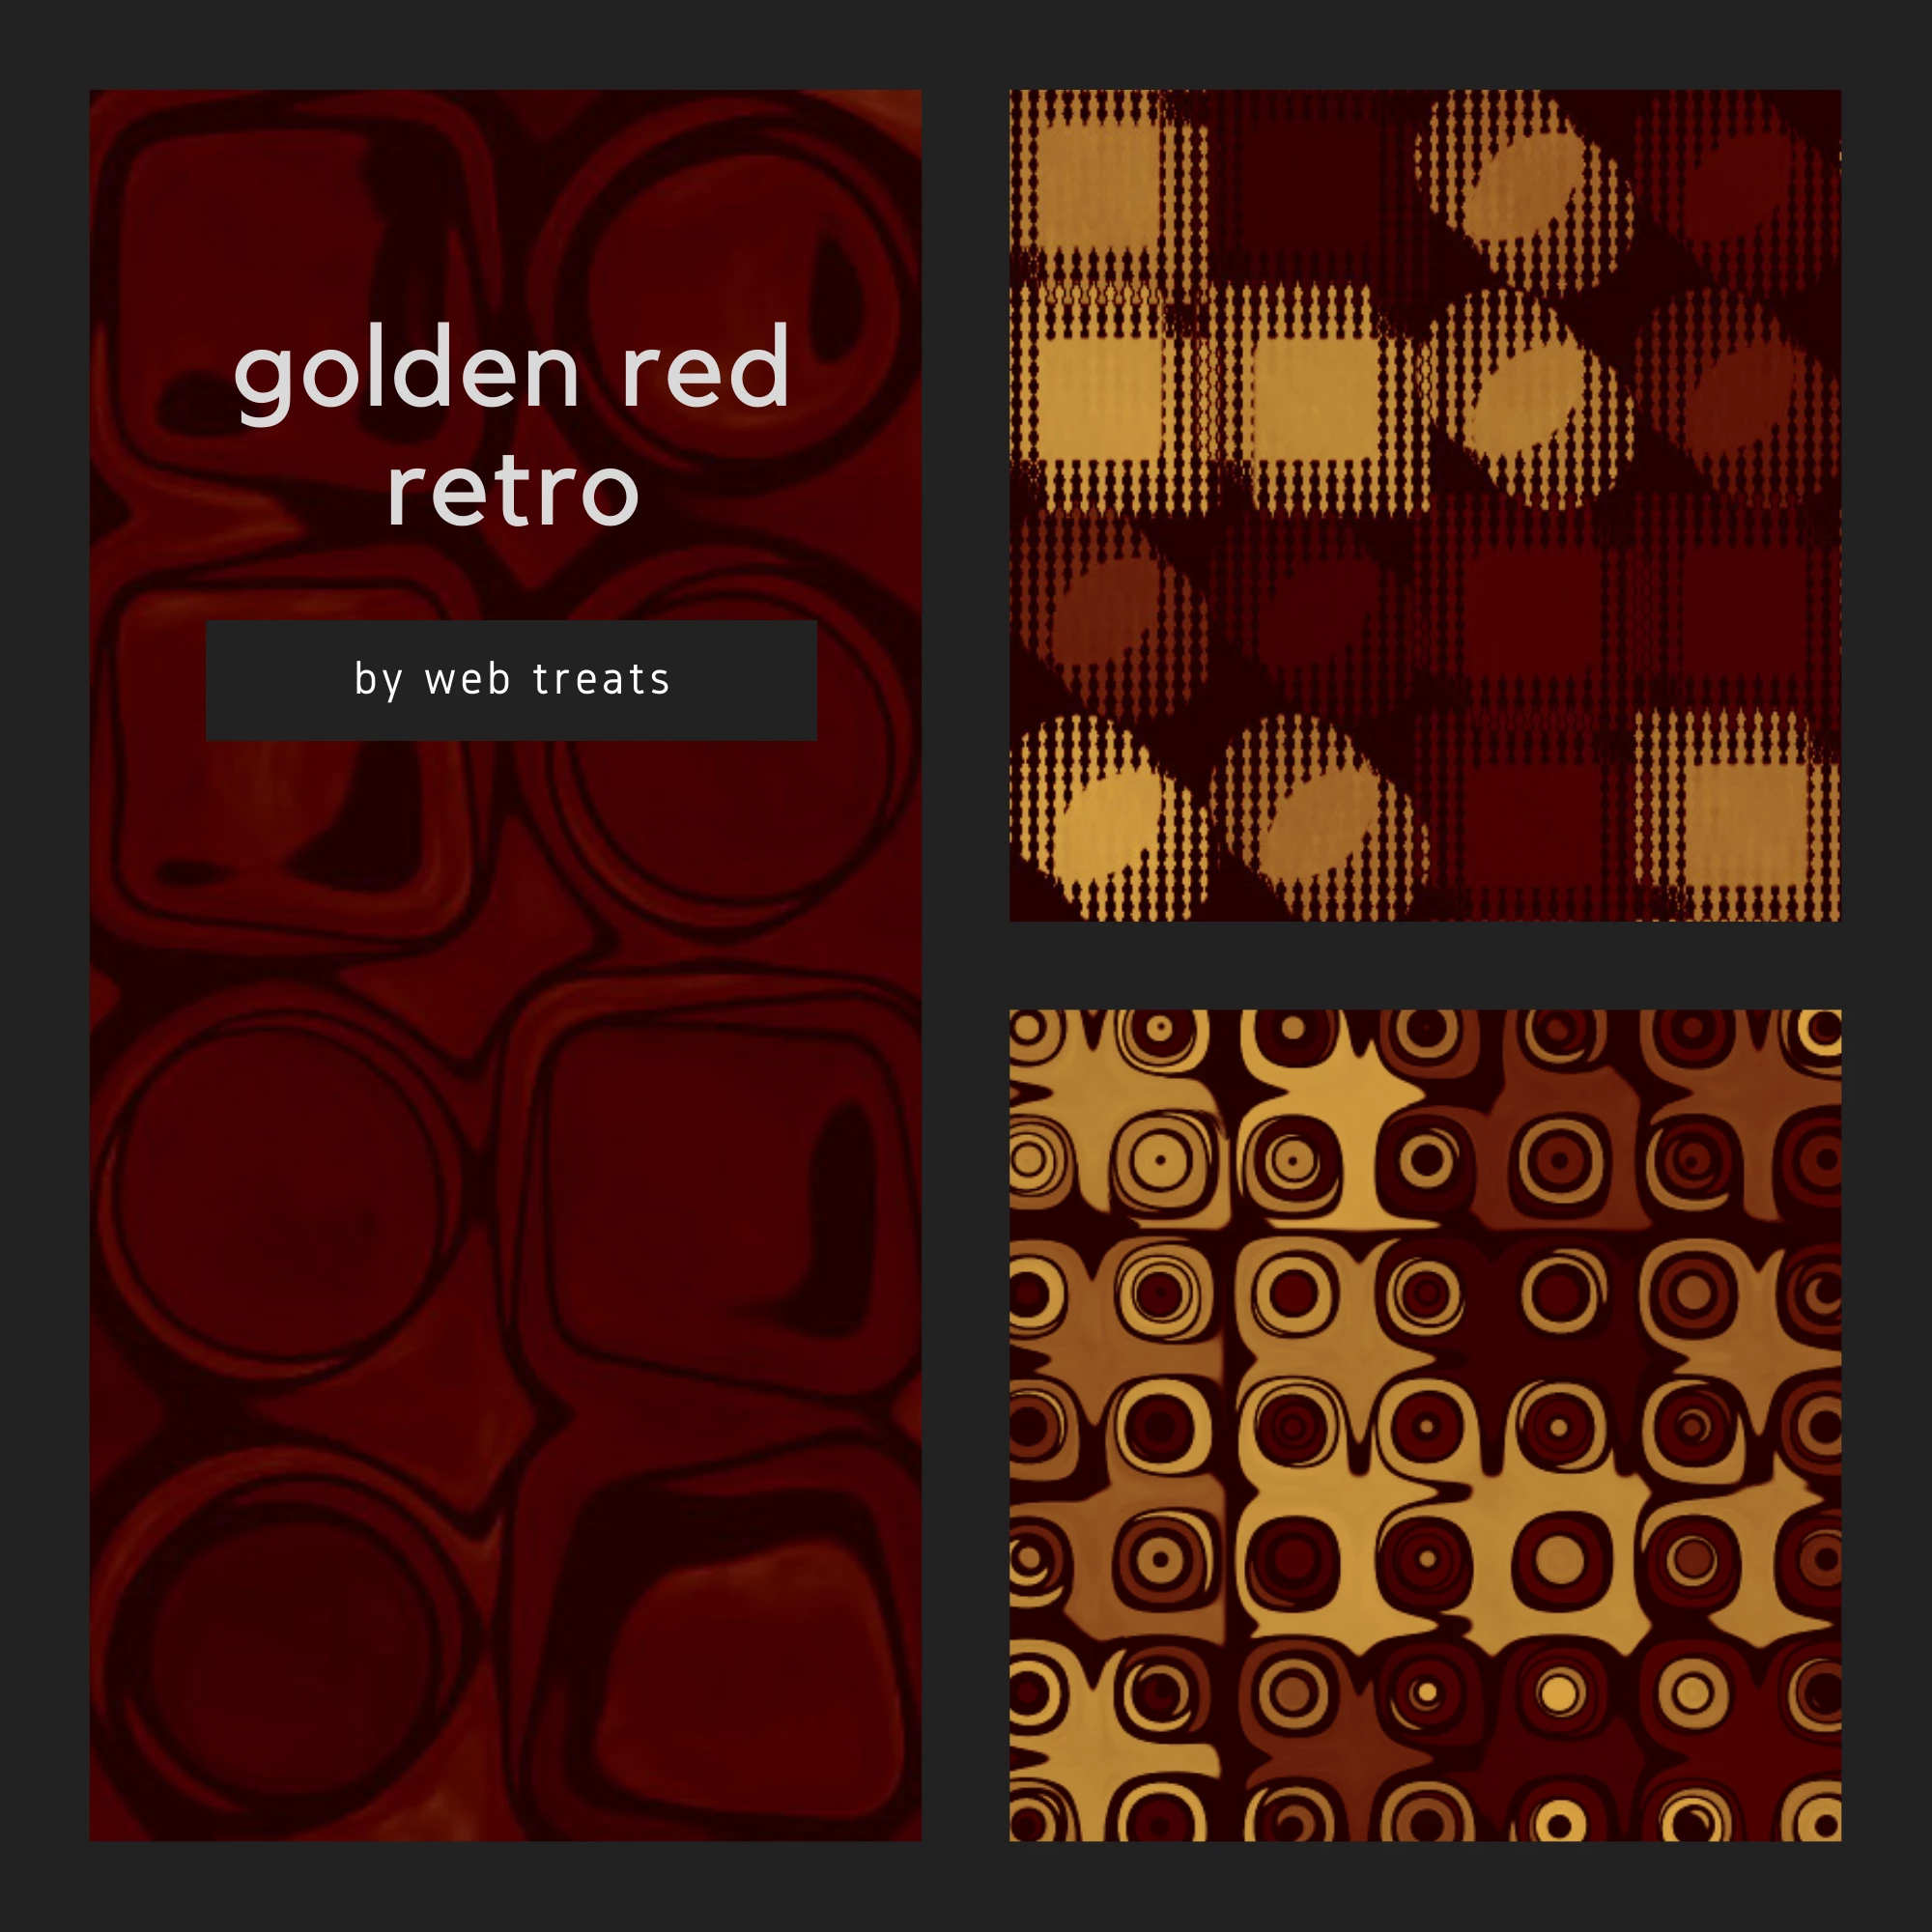 golden red retro textures